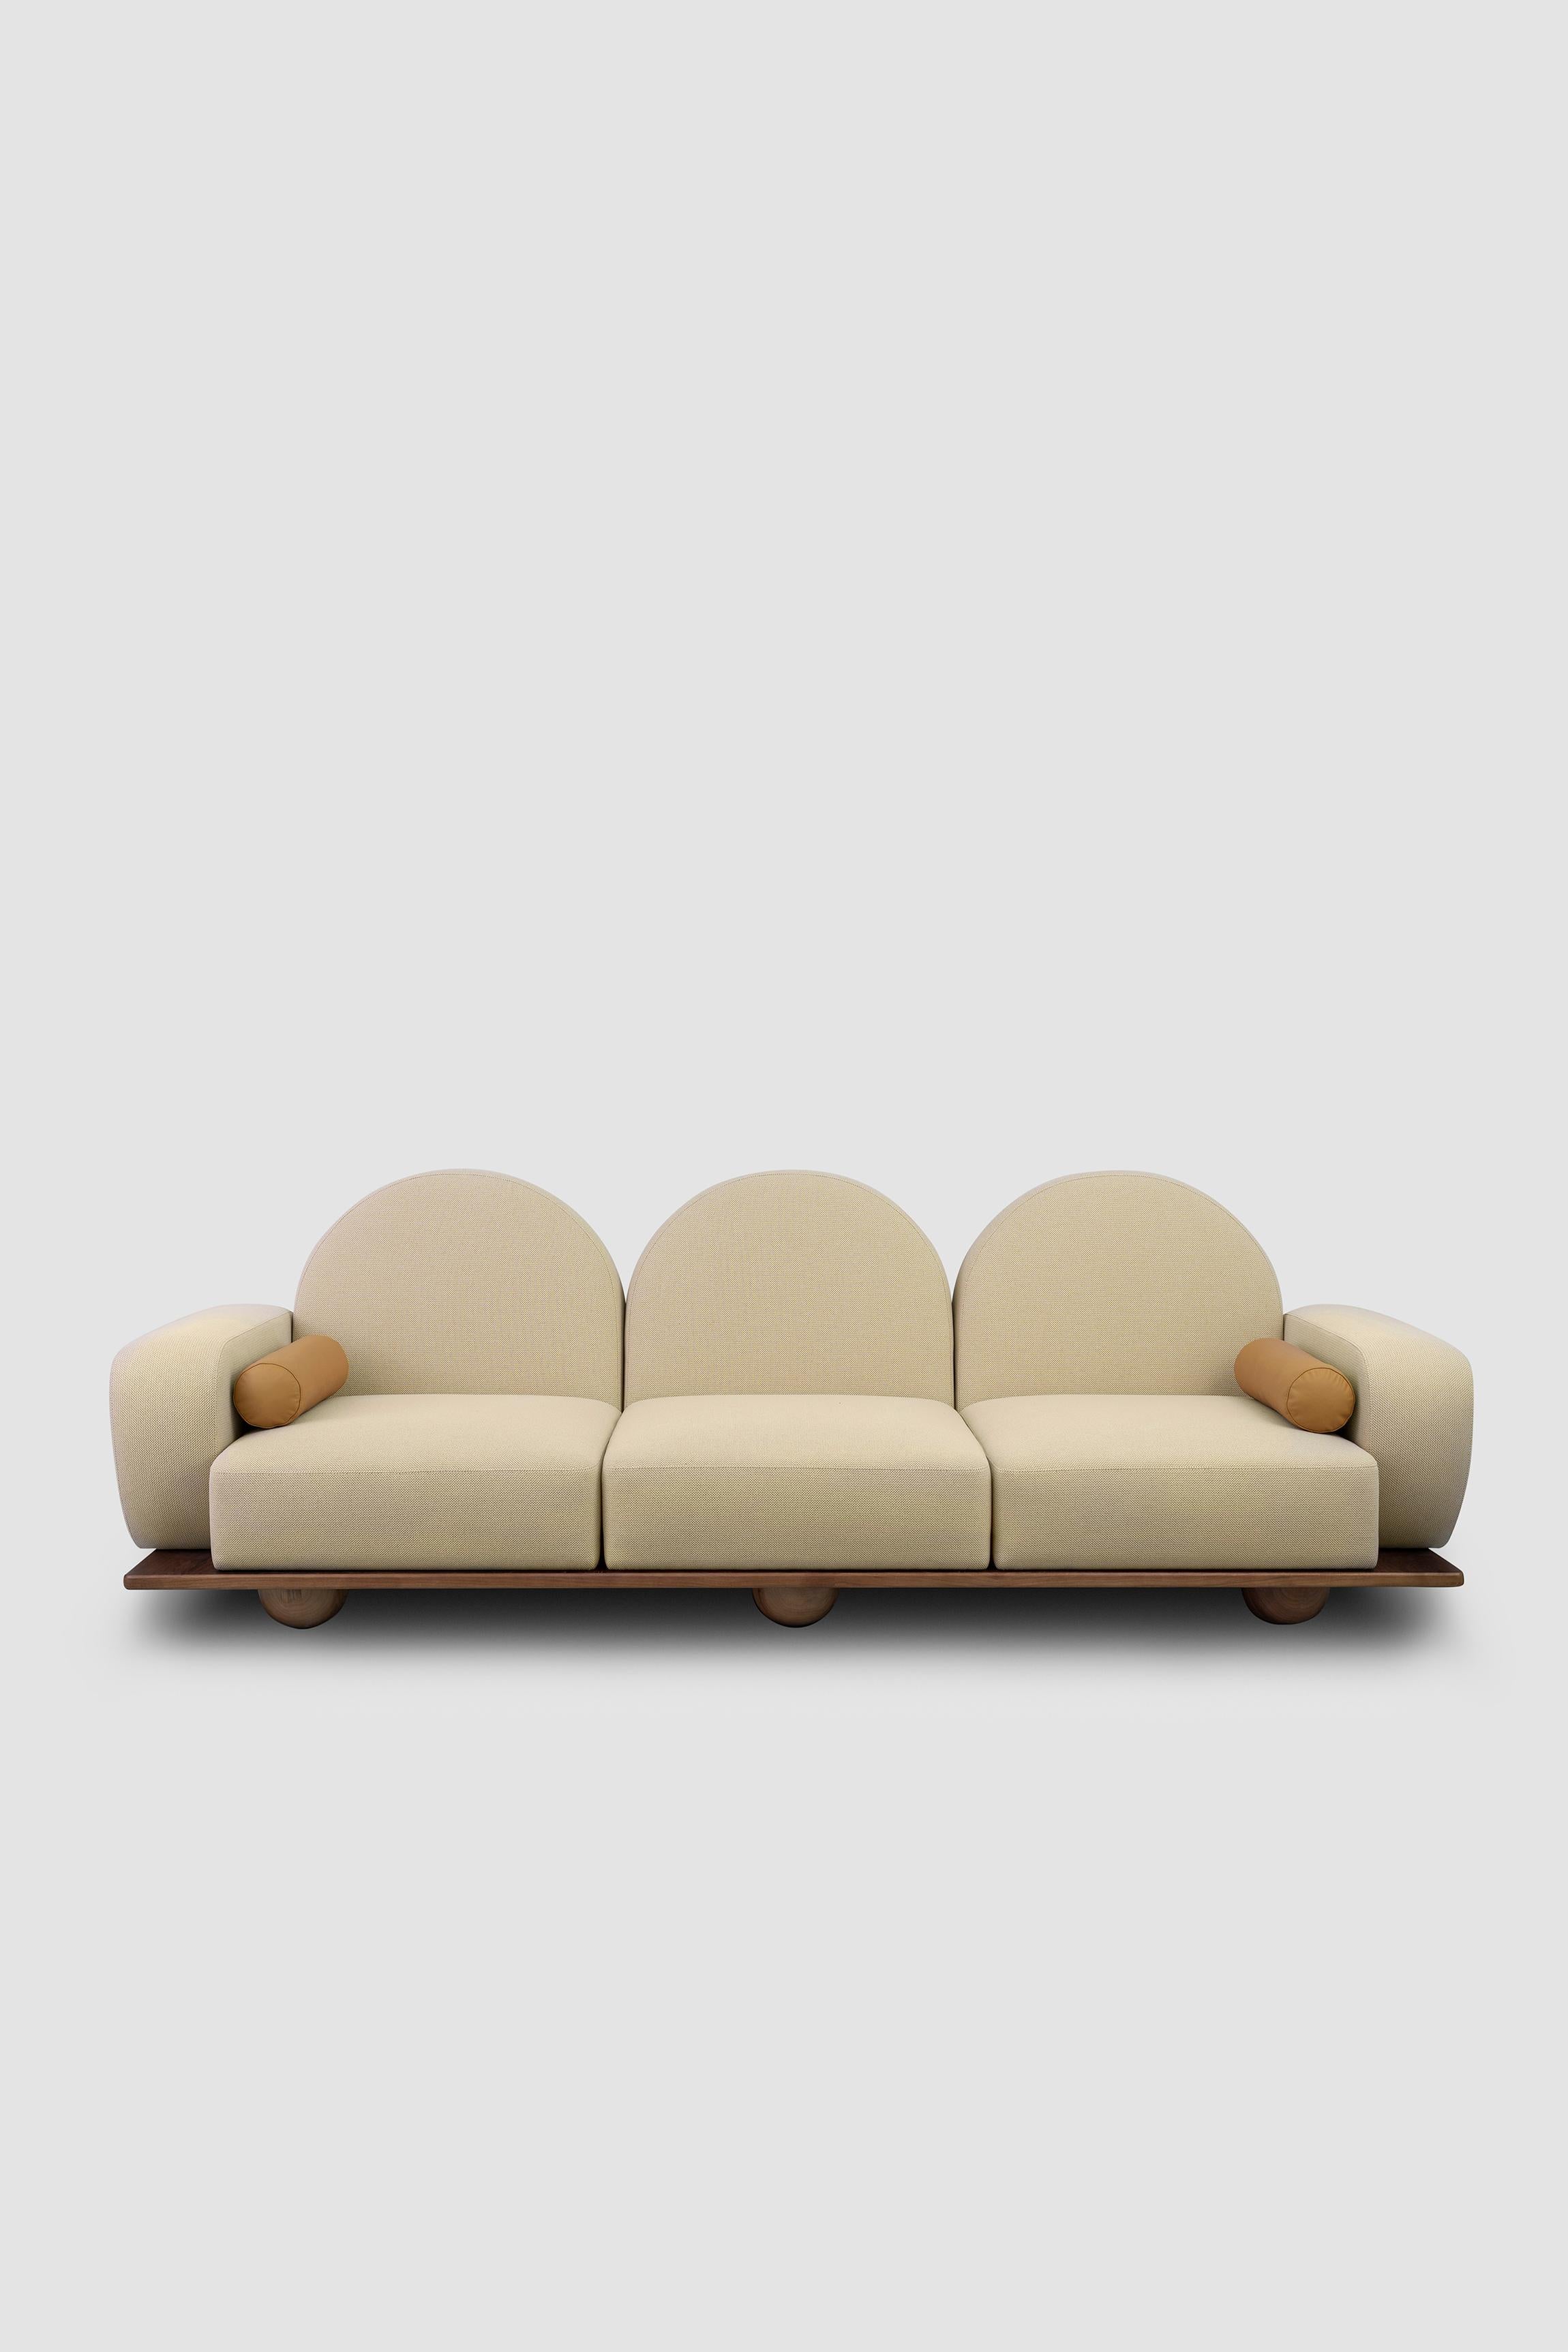 Beice est un canapé 3 places conçu pour imiter la sensation d'être assis sur des nuages de barbe à papa. La combinaison de sa couleur rose poudré, de ses dossiers en forme d'arc, de ses bords arrondis et de ses pieds en noyer en forme de sphère crée